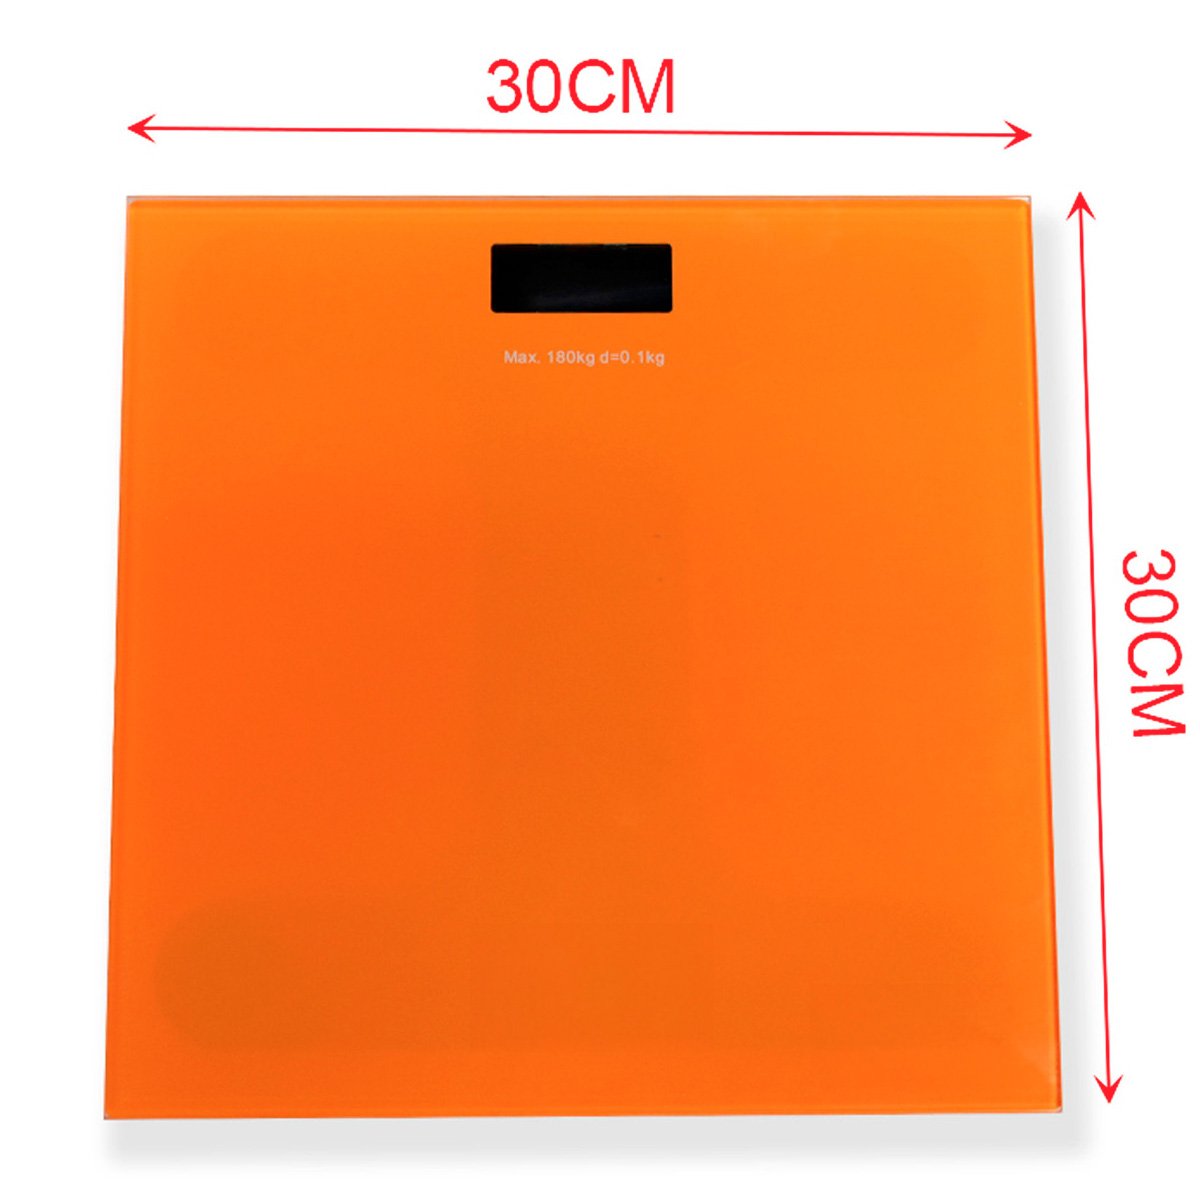 Bilancia Pesapersone Digitale LED in Vetro 30x30cm in Chilogrammi Avvio Automatico a Batteria 2 AAA Escluse Colore Giallo Arancione